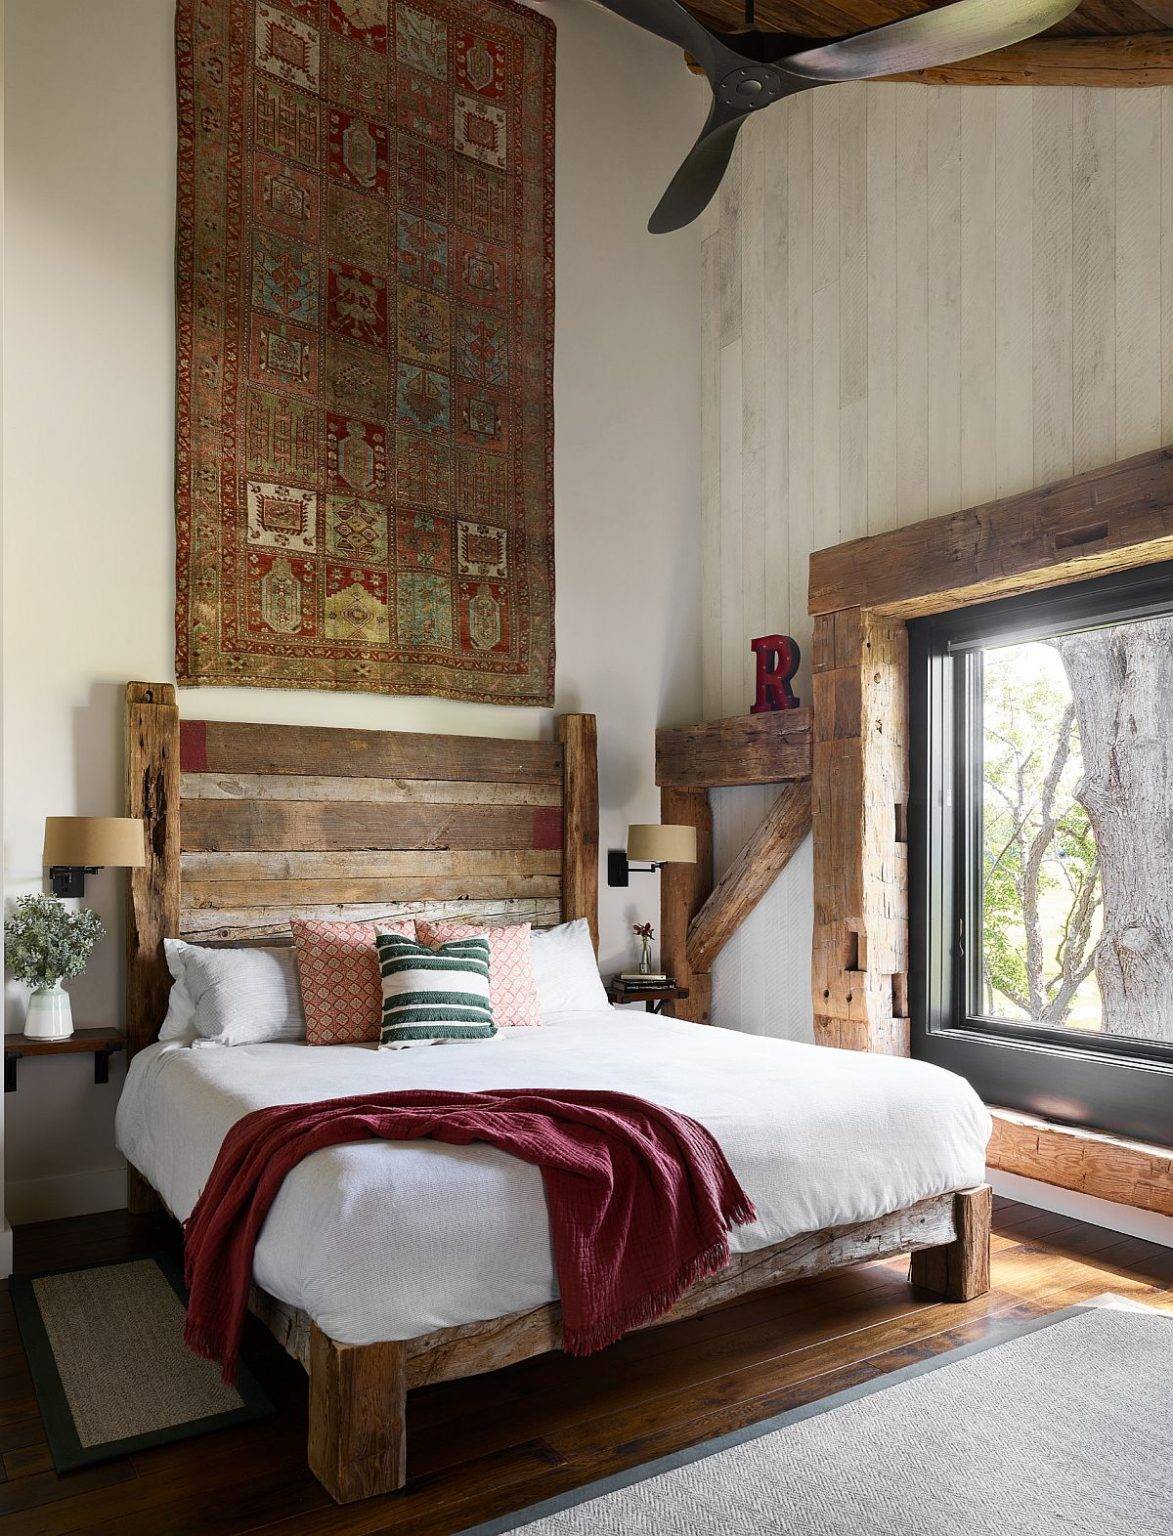 Phòng ngủ phong cách Rustic mộc mạc, tạo cảm giác thư giãn thoải mái cho người dùng.